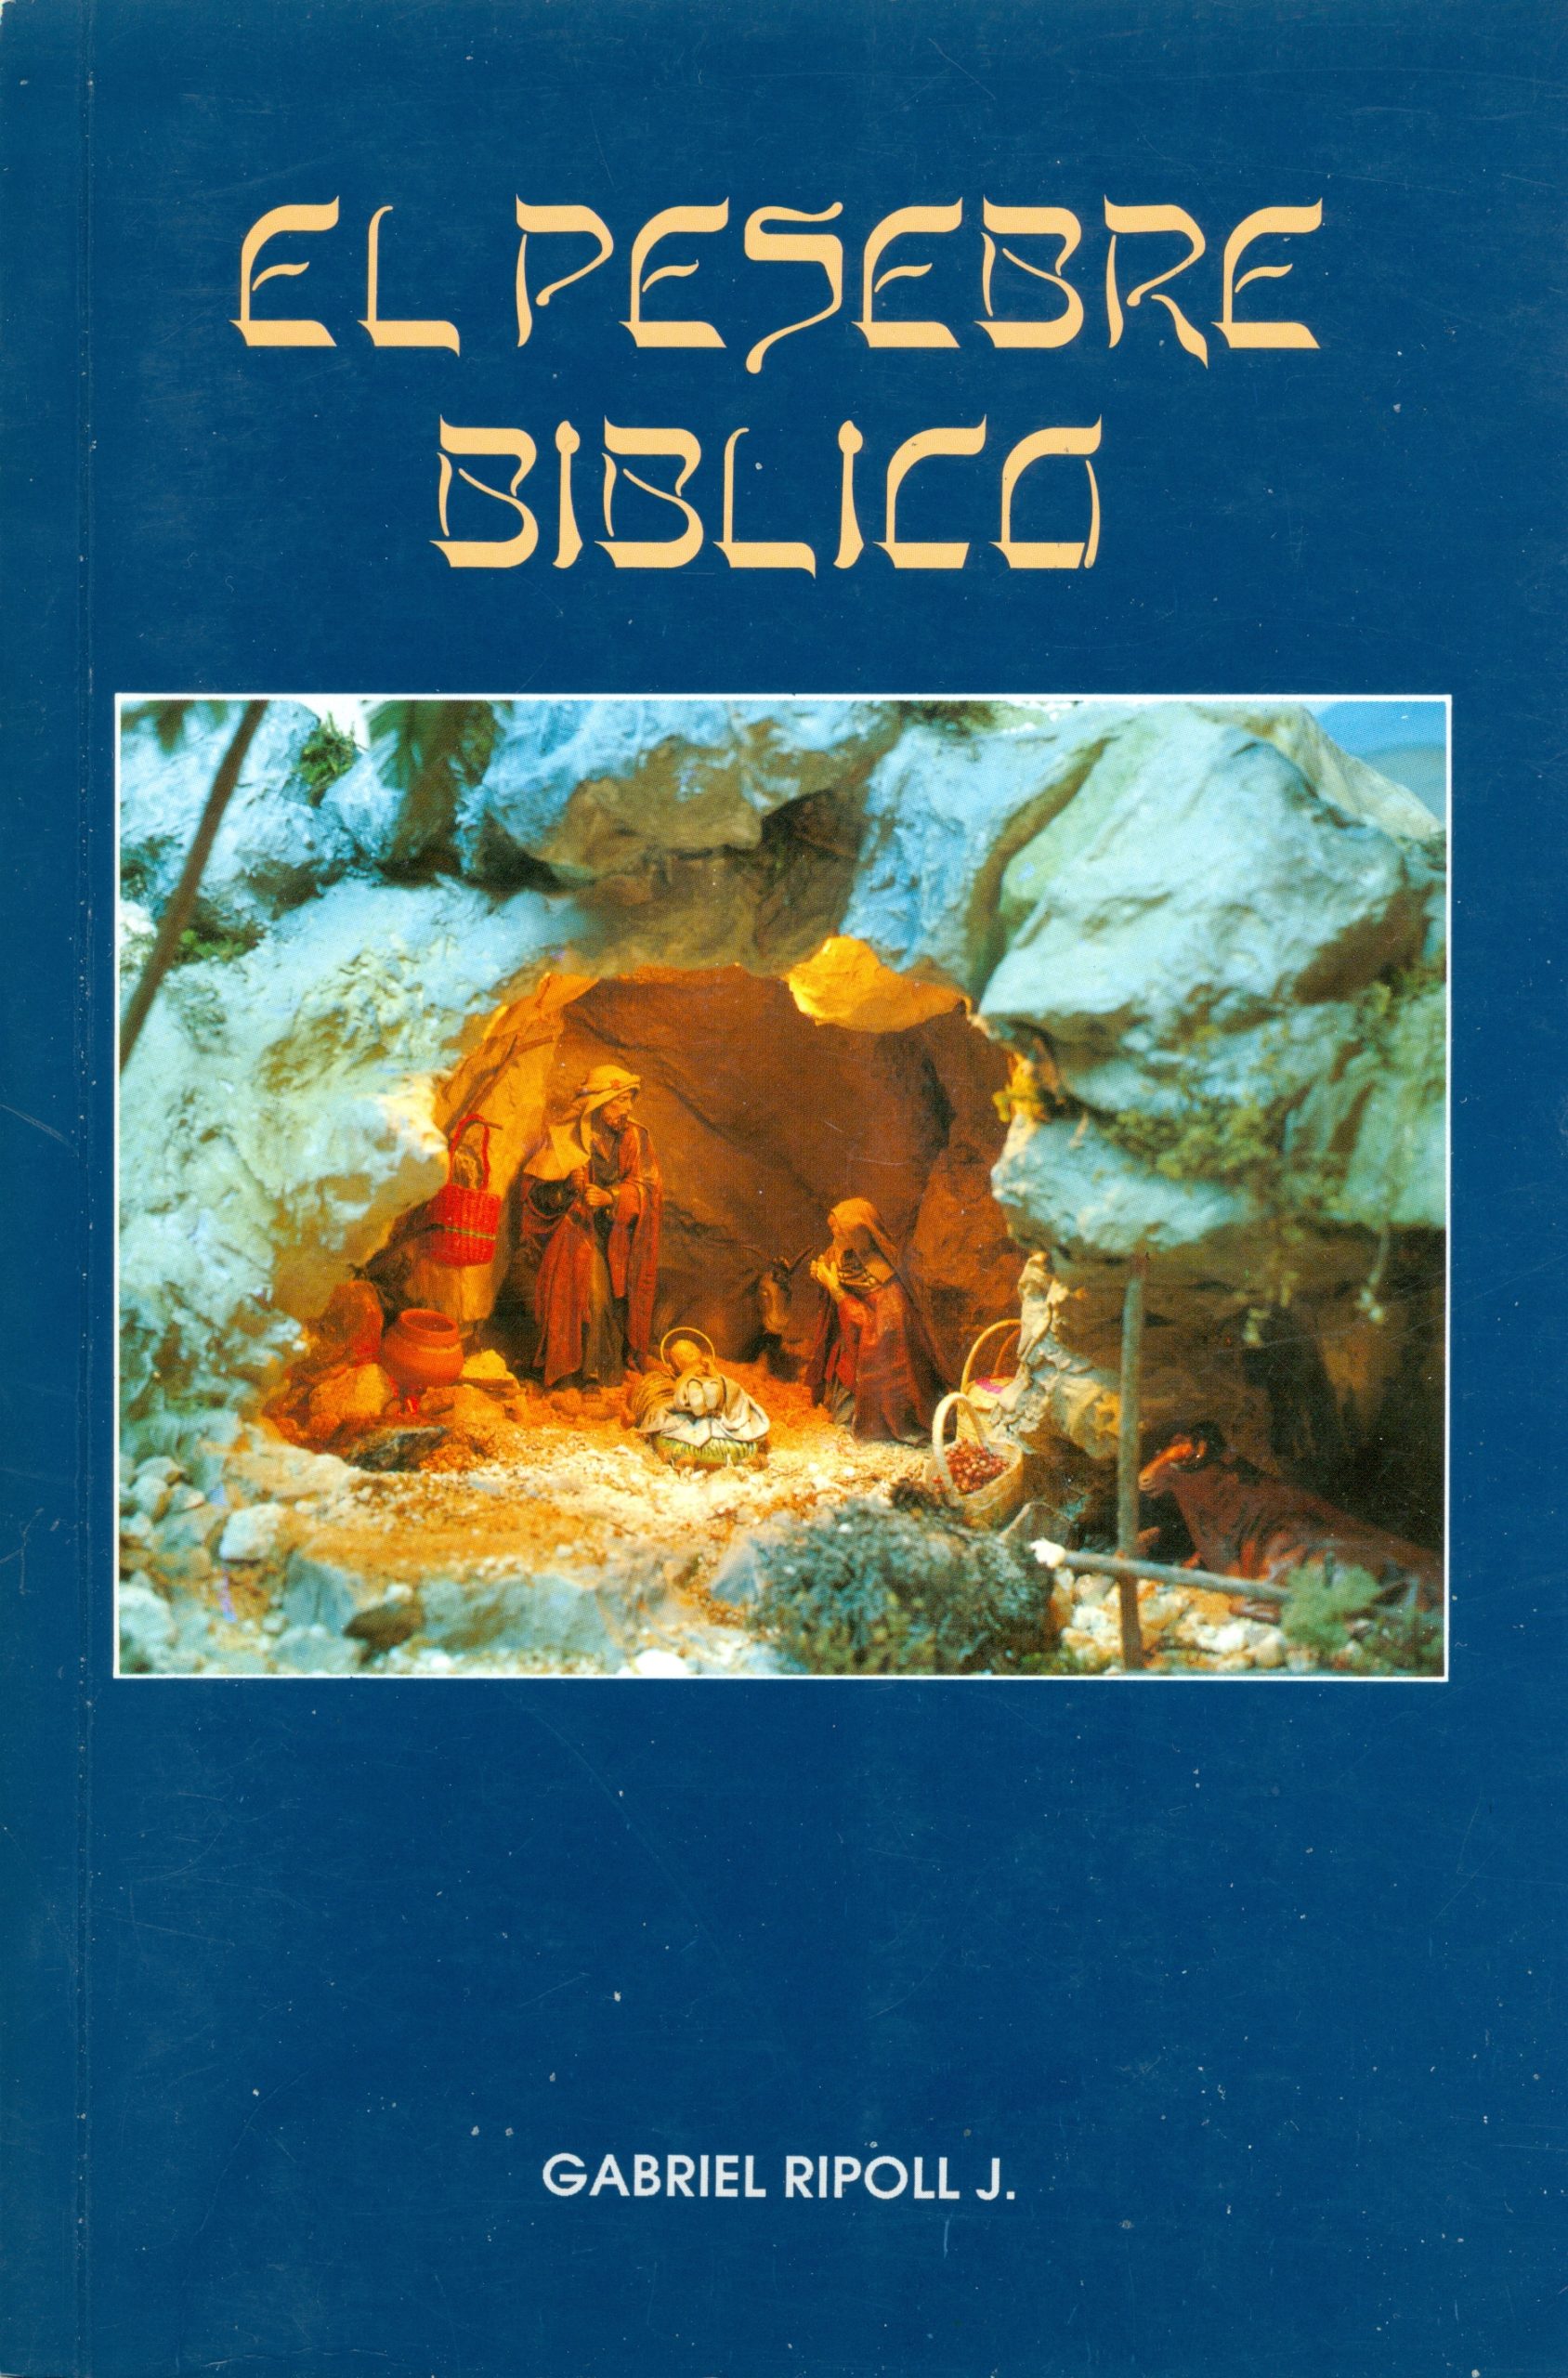 Portada del libro «El pesebre bíblico» escrito y publicado su autor Gabriel Ripoll Jaramillo (09/1992)